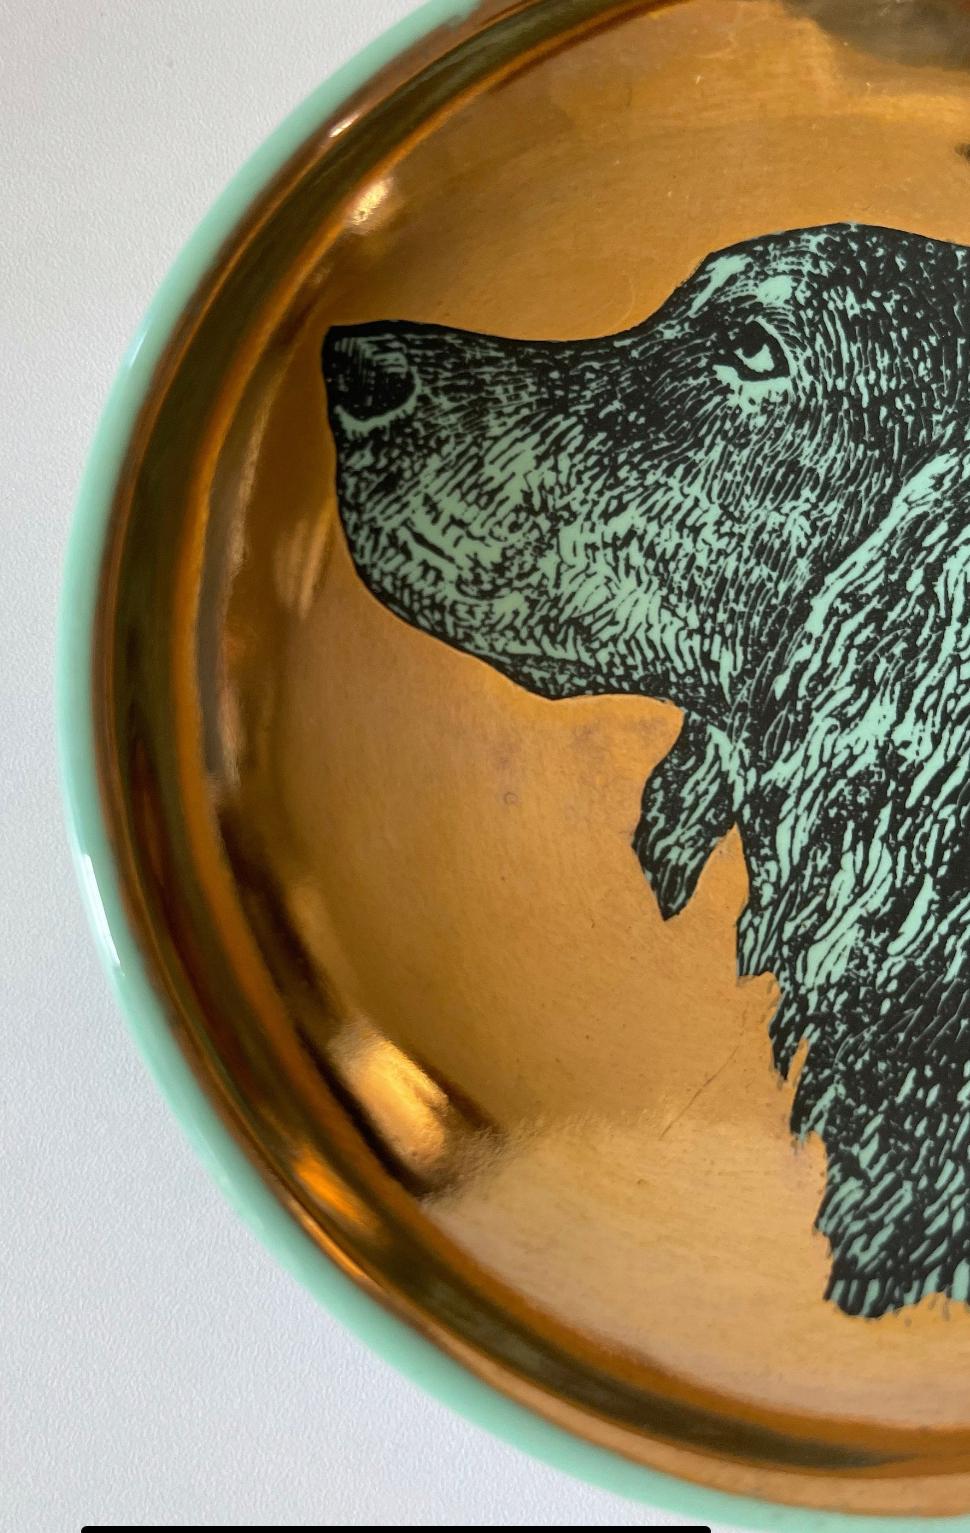 Die Portman Gallery (Brooklyn, NY) bietet diesen hohlen, konkaven Hundenapf von Fornasetti aus Keramik an, grün glasiert und vergoldet, in sehr gutem Zustand.

Ich habe noch nie einen Napf wie diesen in a) so gutem Zustand und b) mit zwei anderen